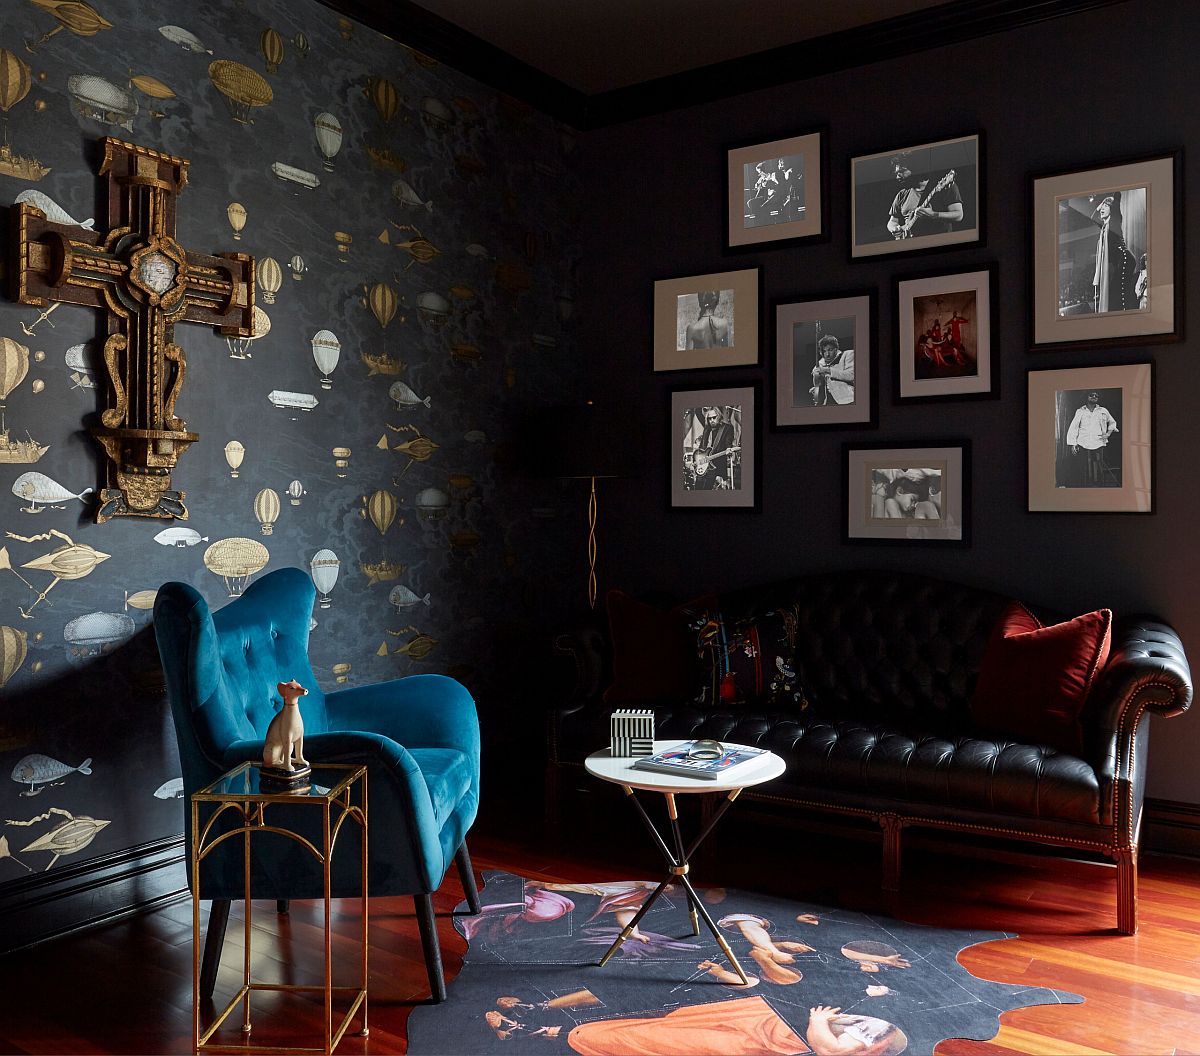 hình ảnh mẫu phòng khách phong cách chiết trung ấn tượng với giấy dán tường họa tiết vàng, ghế bành màu xanh da trời